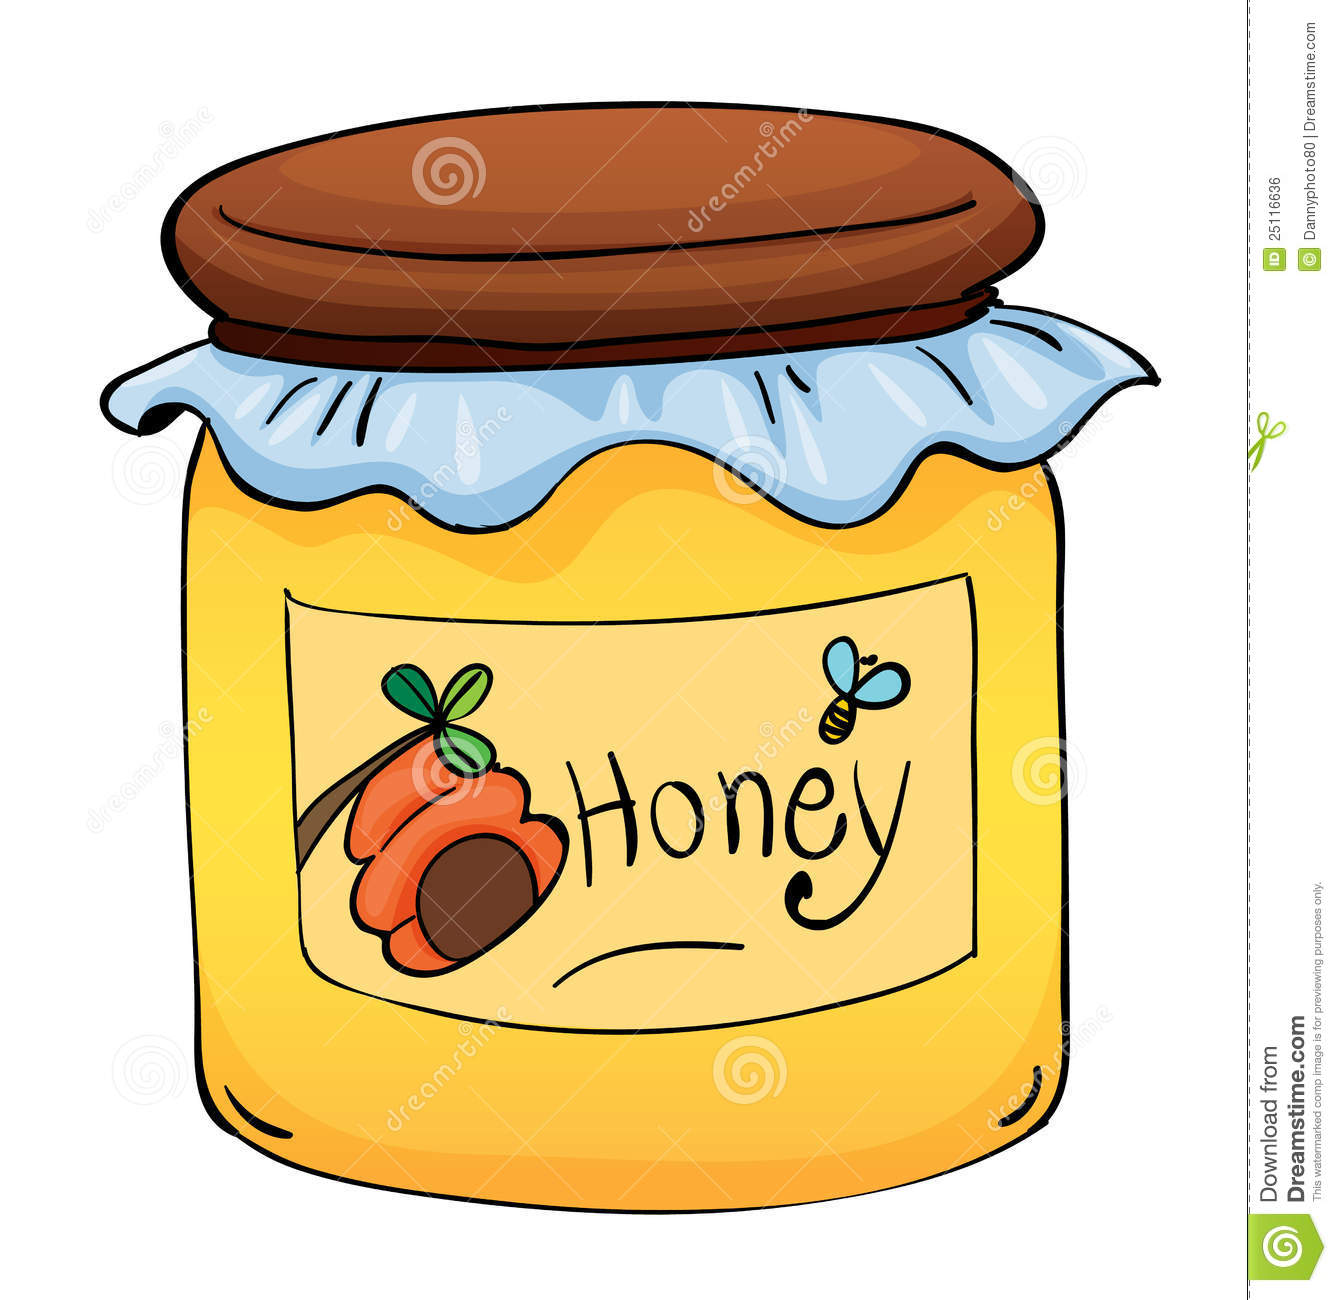 Honey Royalty Free Stock Image   Image  25116636